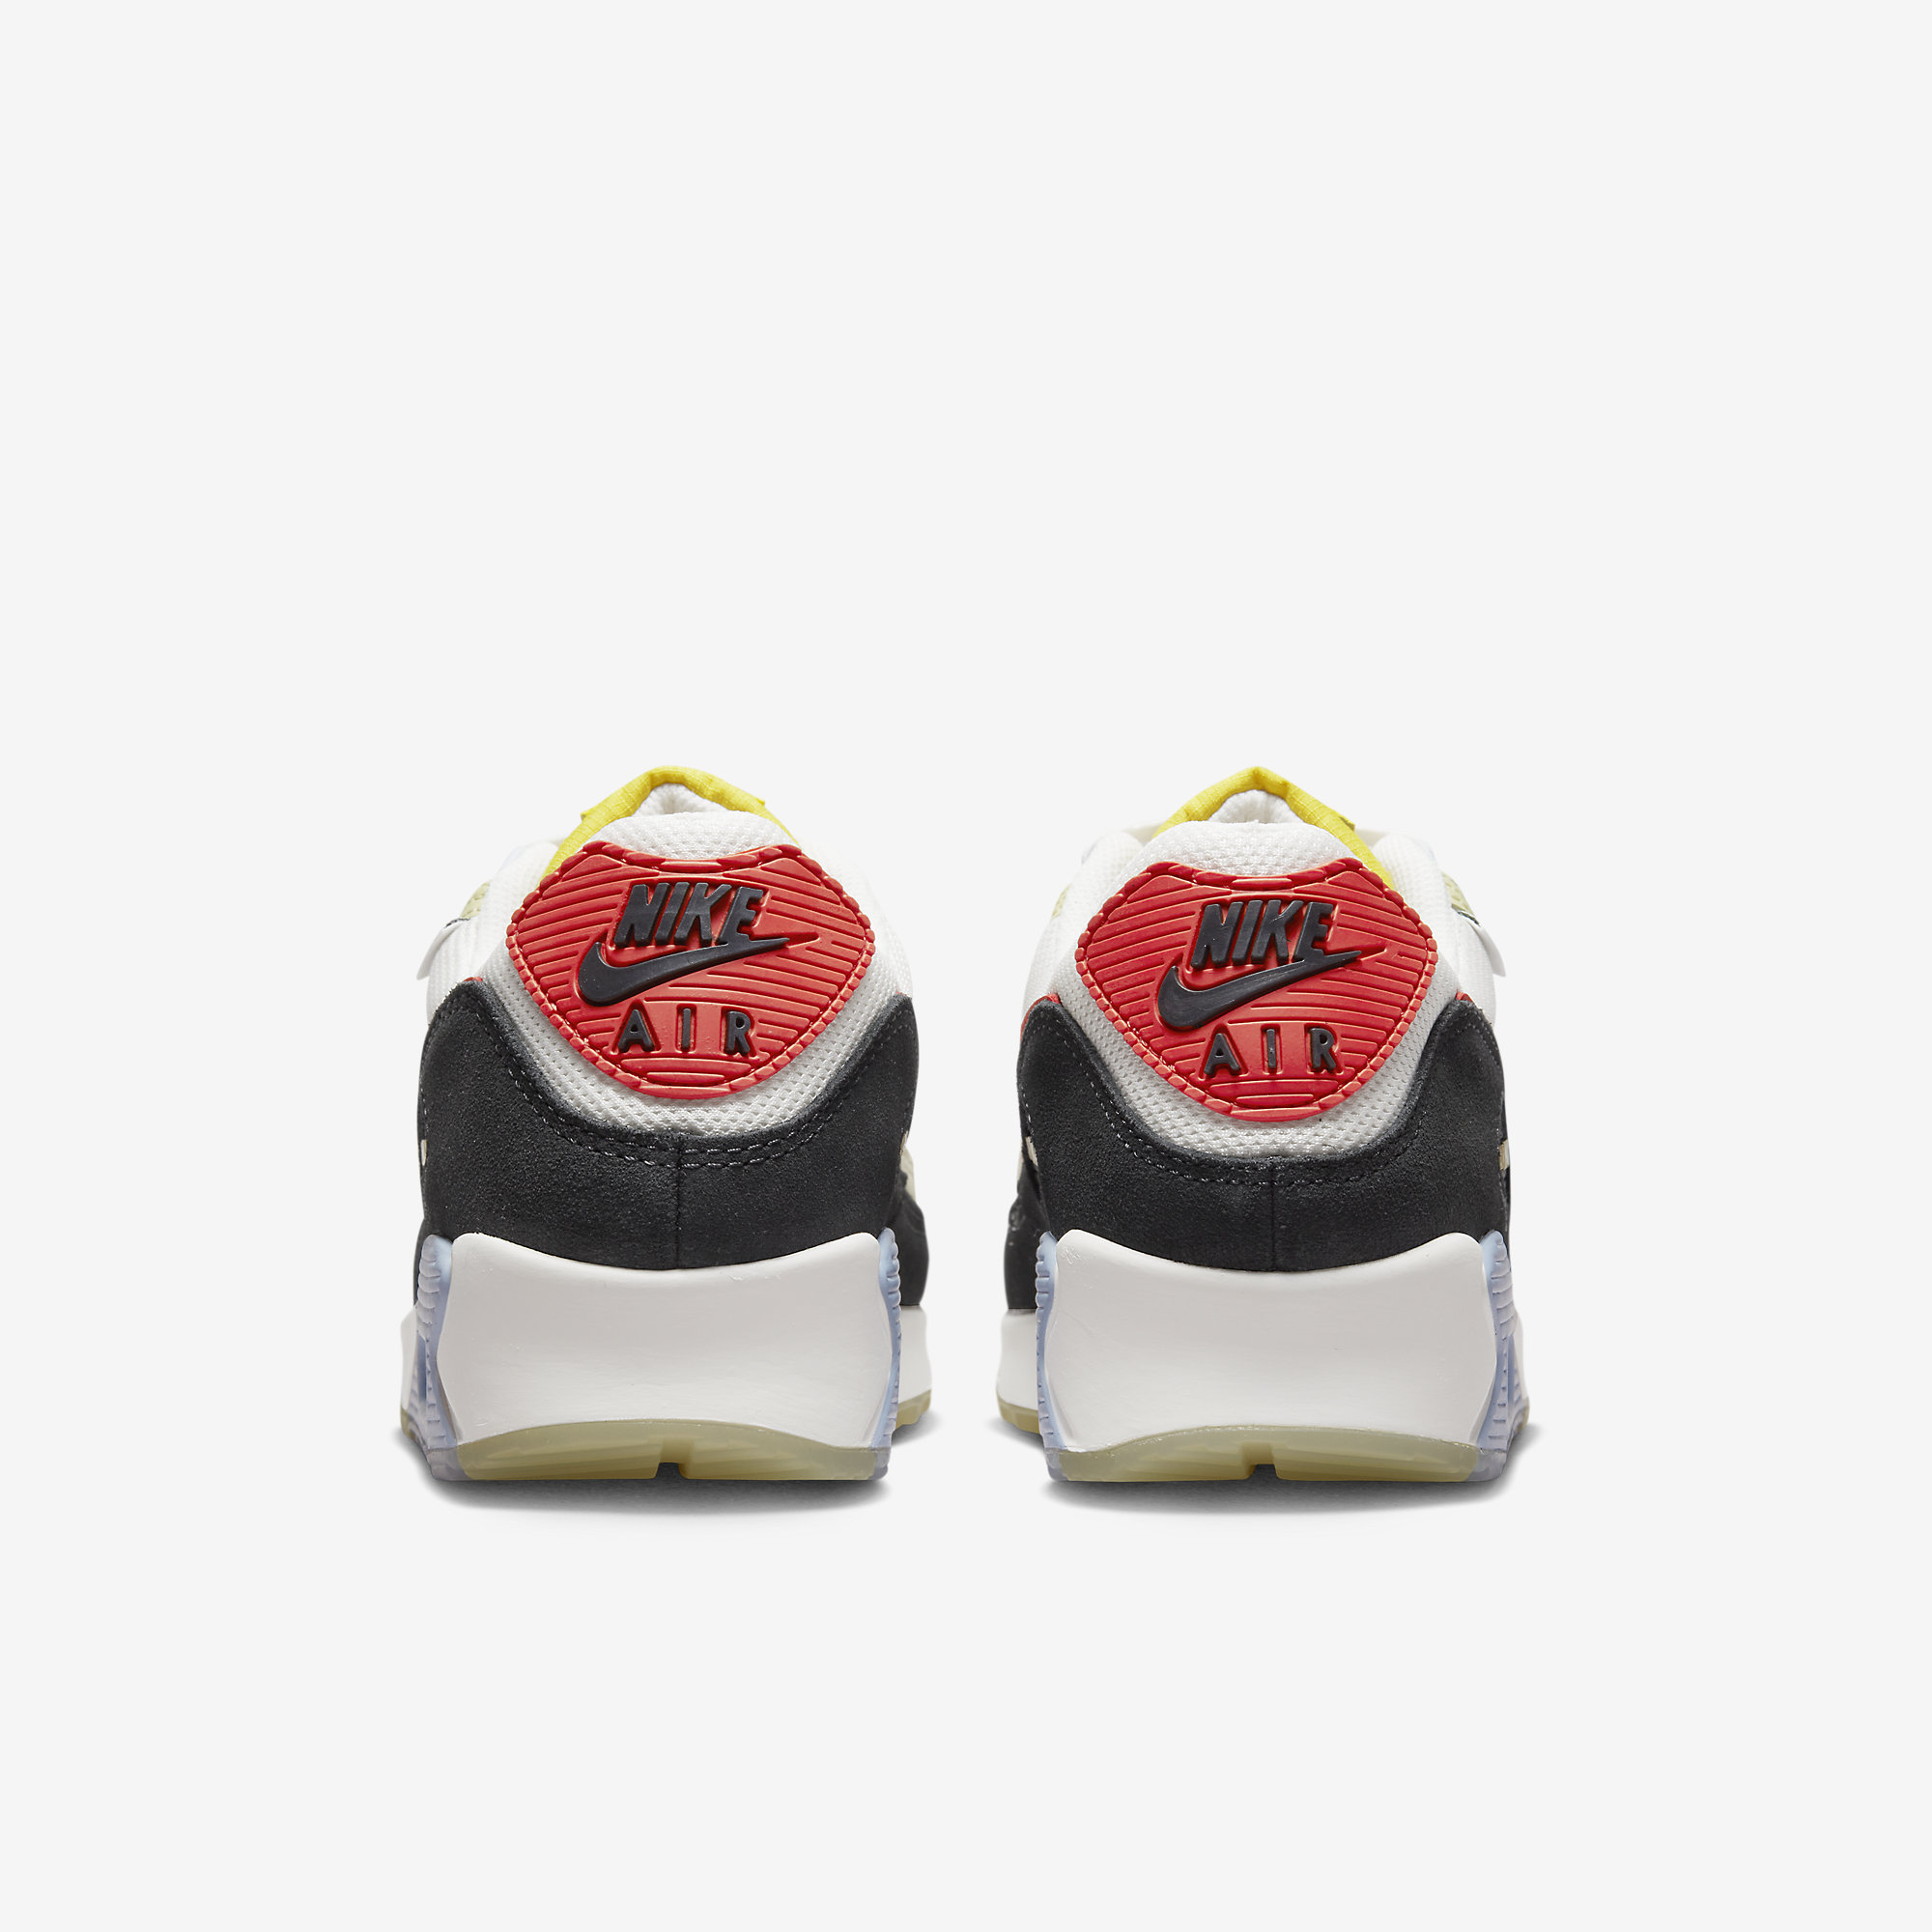 Nike Air Max 90 “Set to Rise” DV2116-700 | Nice Kicks